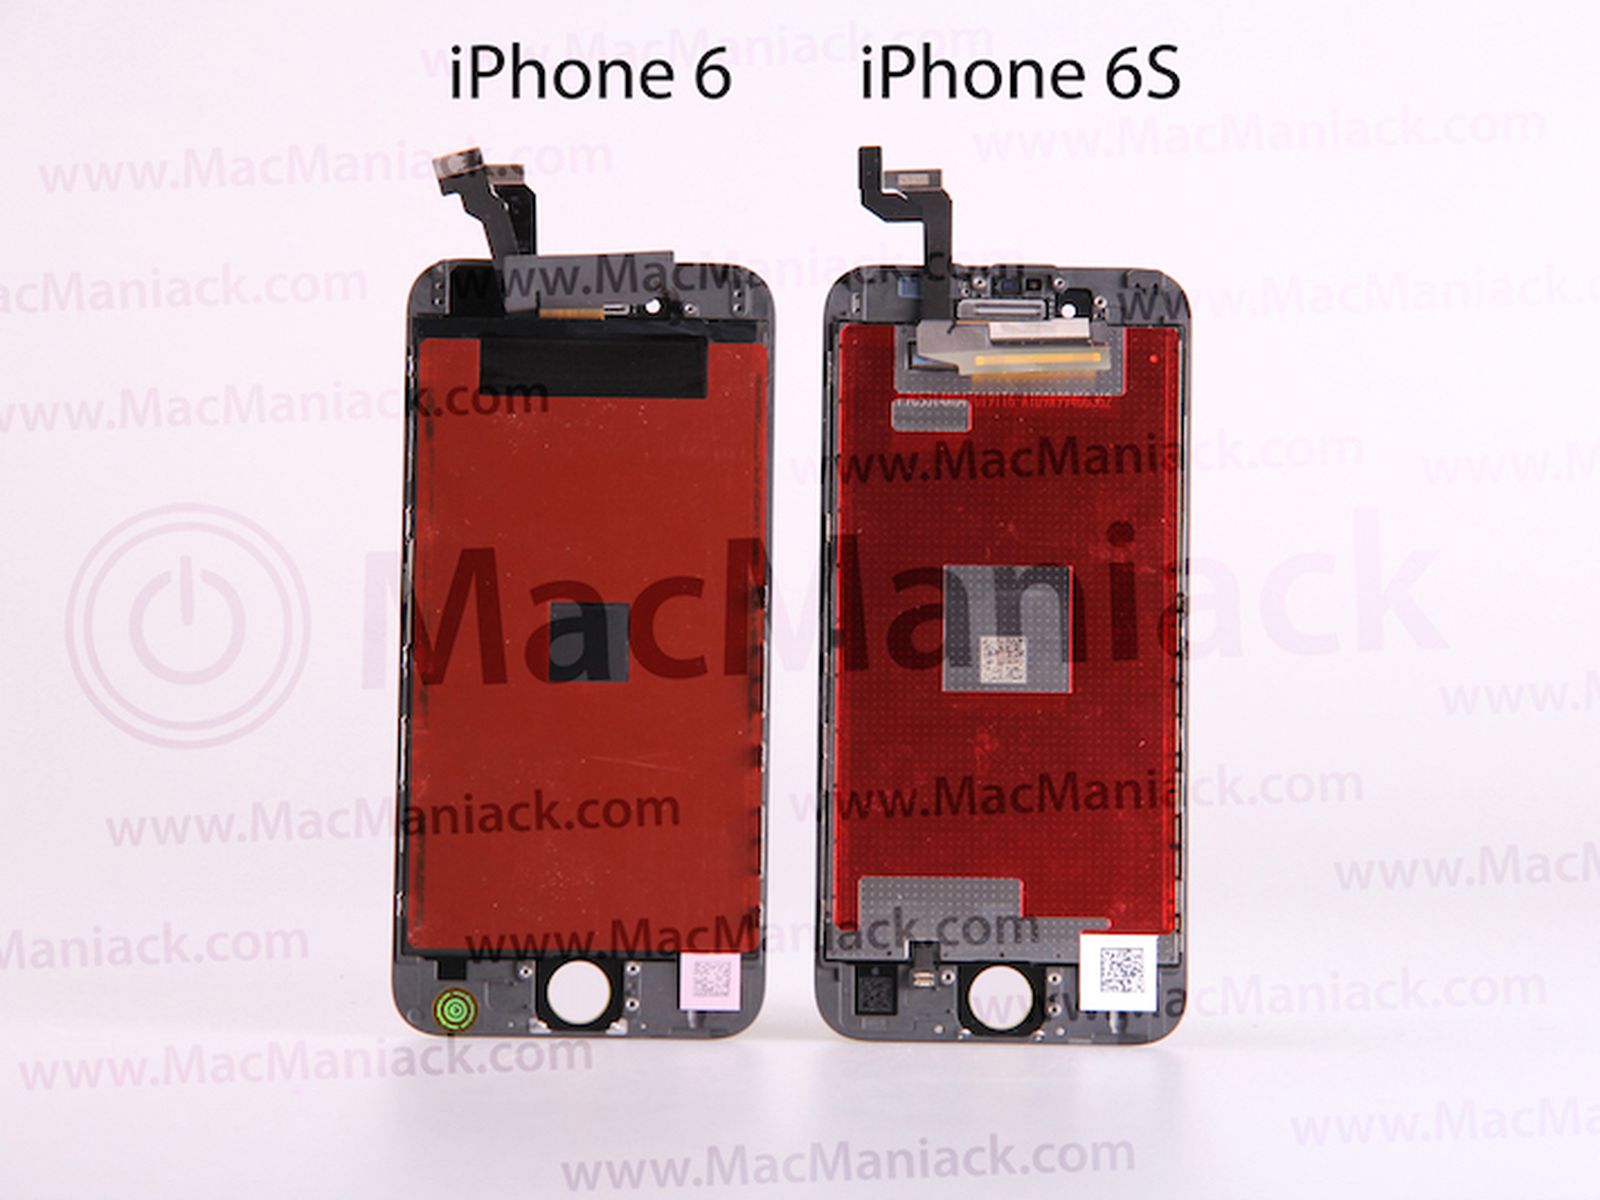 vaas schrobben Geldschieter iPhone 6s' and iPhone 6 Displays Compared in New Video - MacRumors